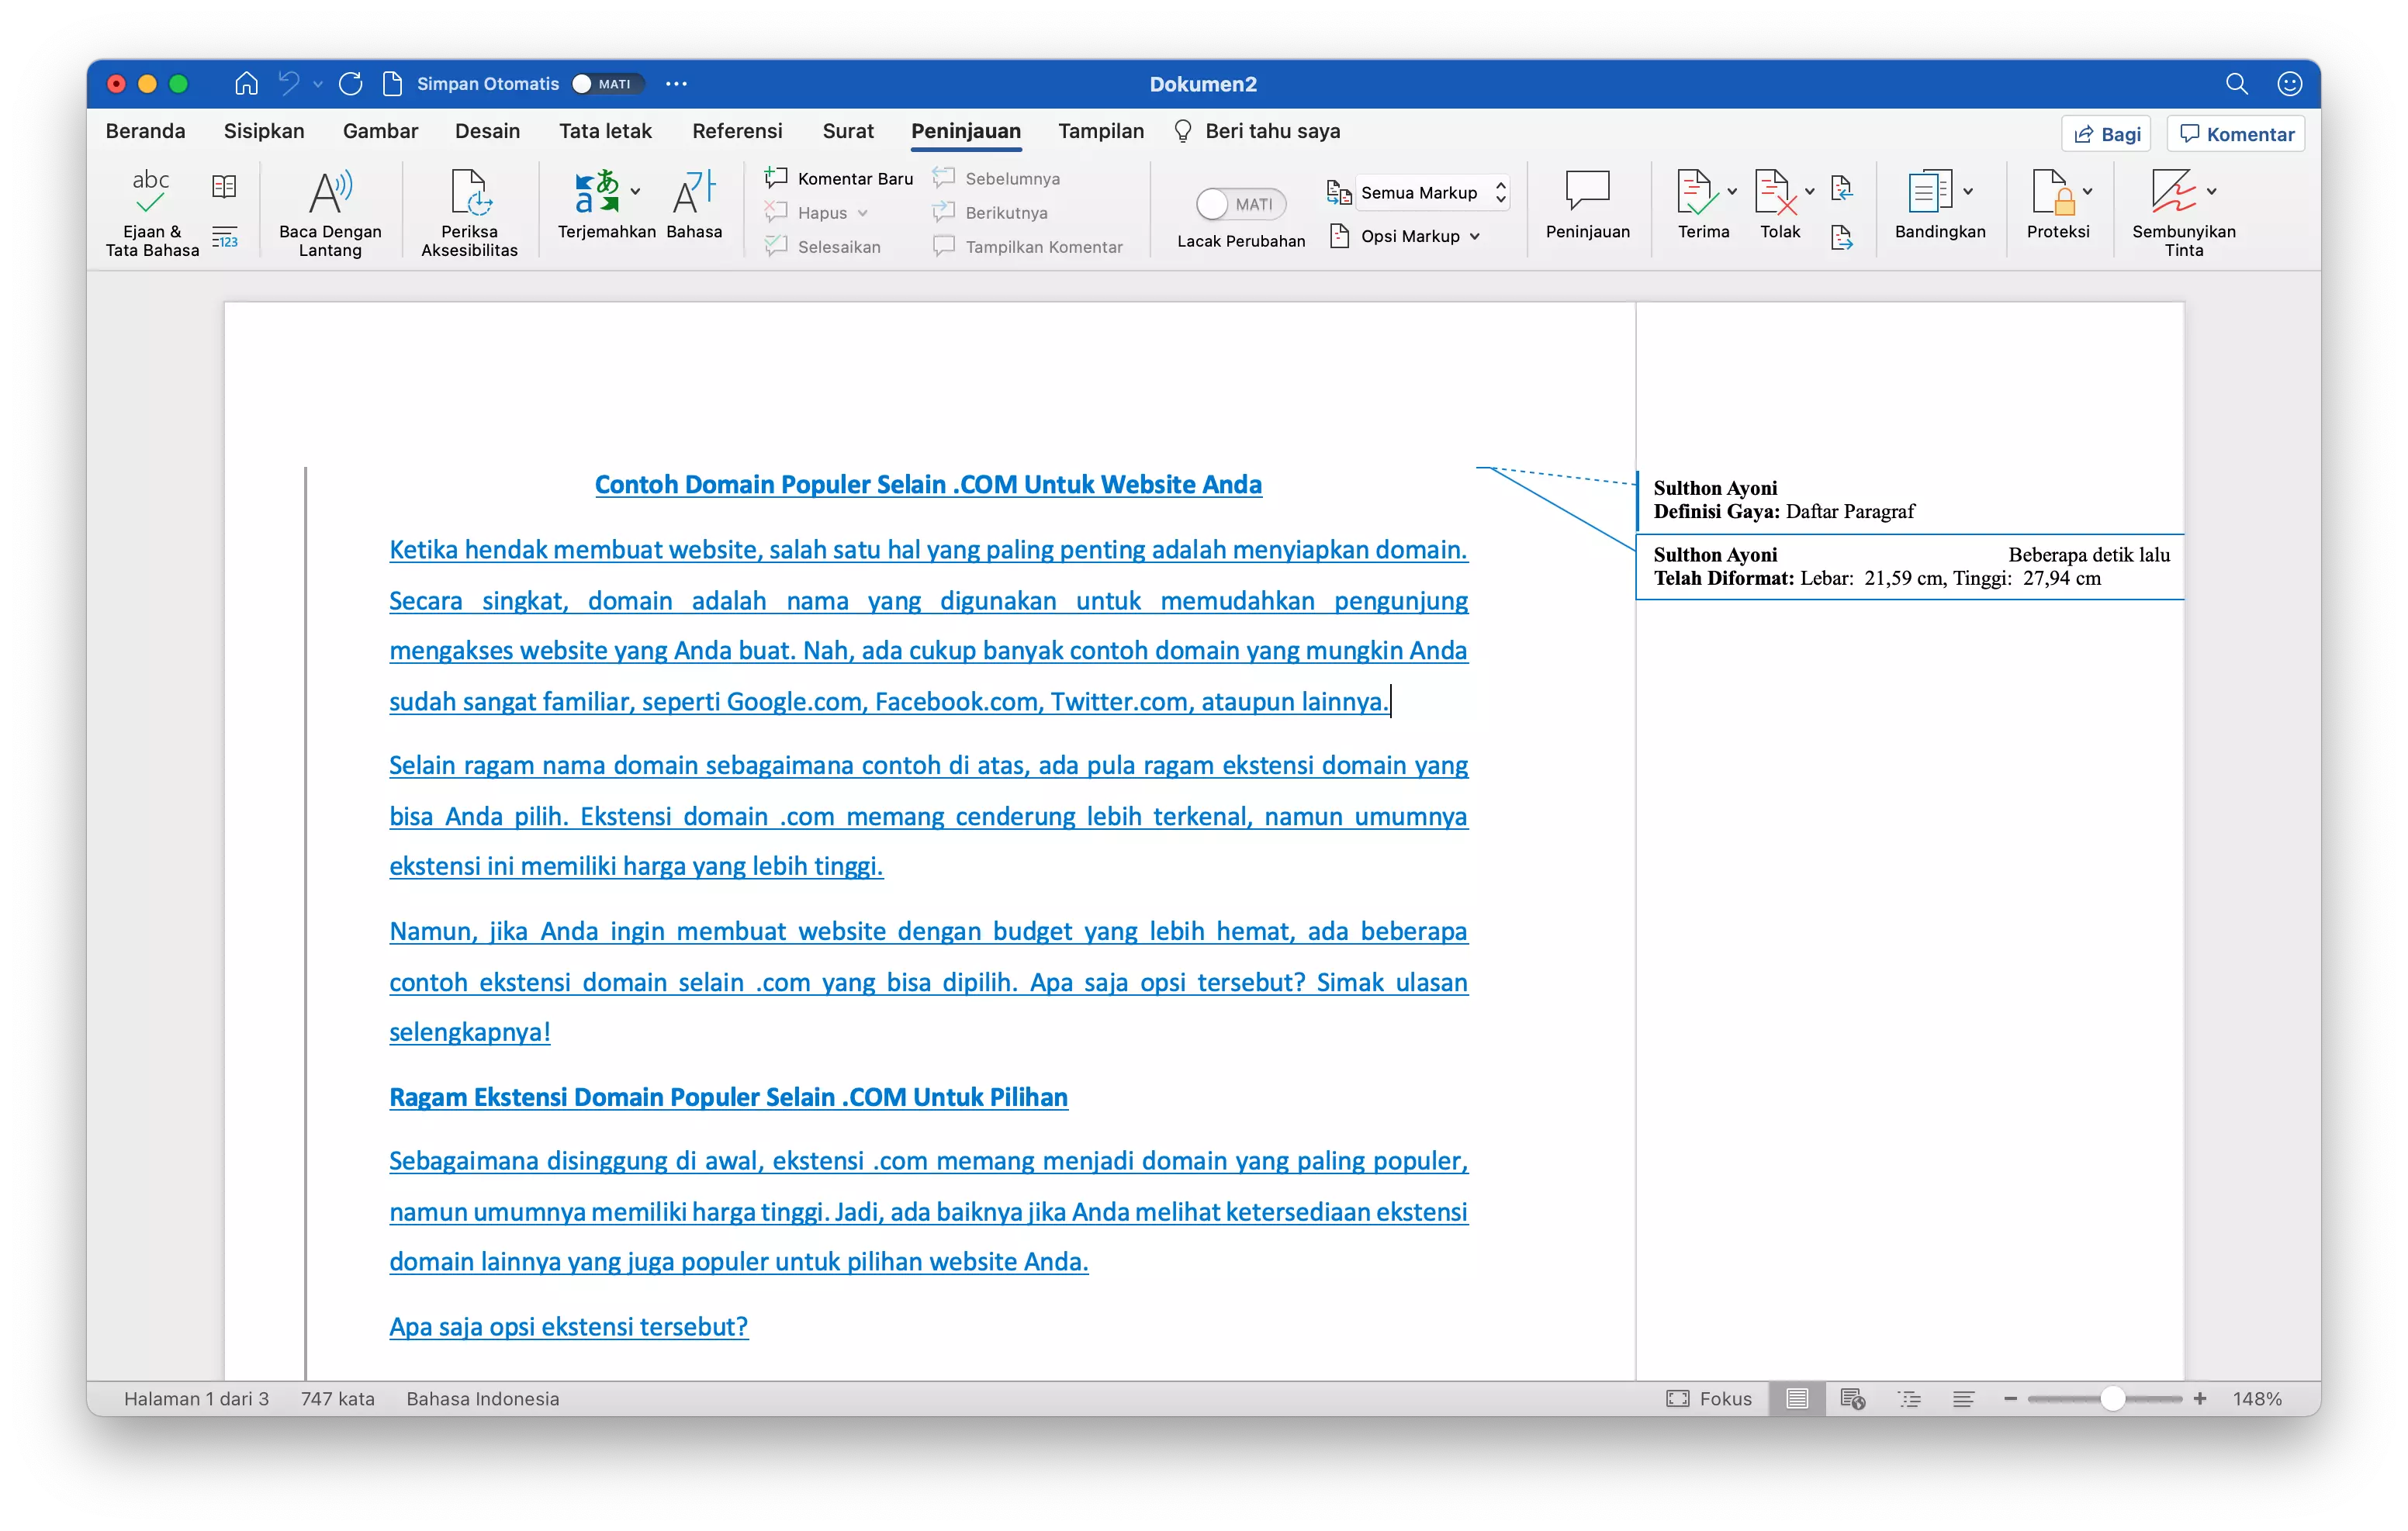 Cara Menggabungkan Dokumen di Microsoft Word by Androbuntu 5